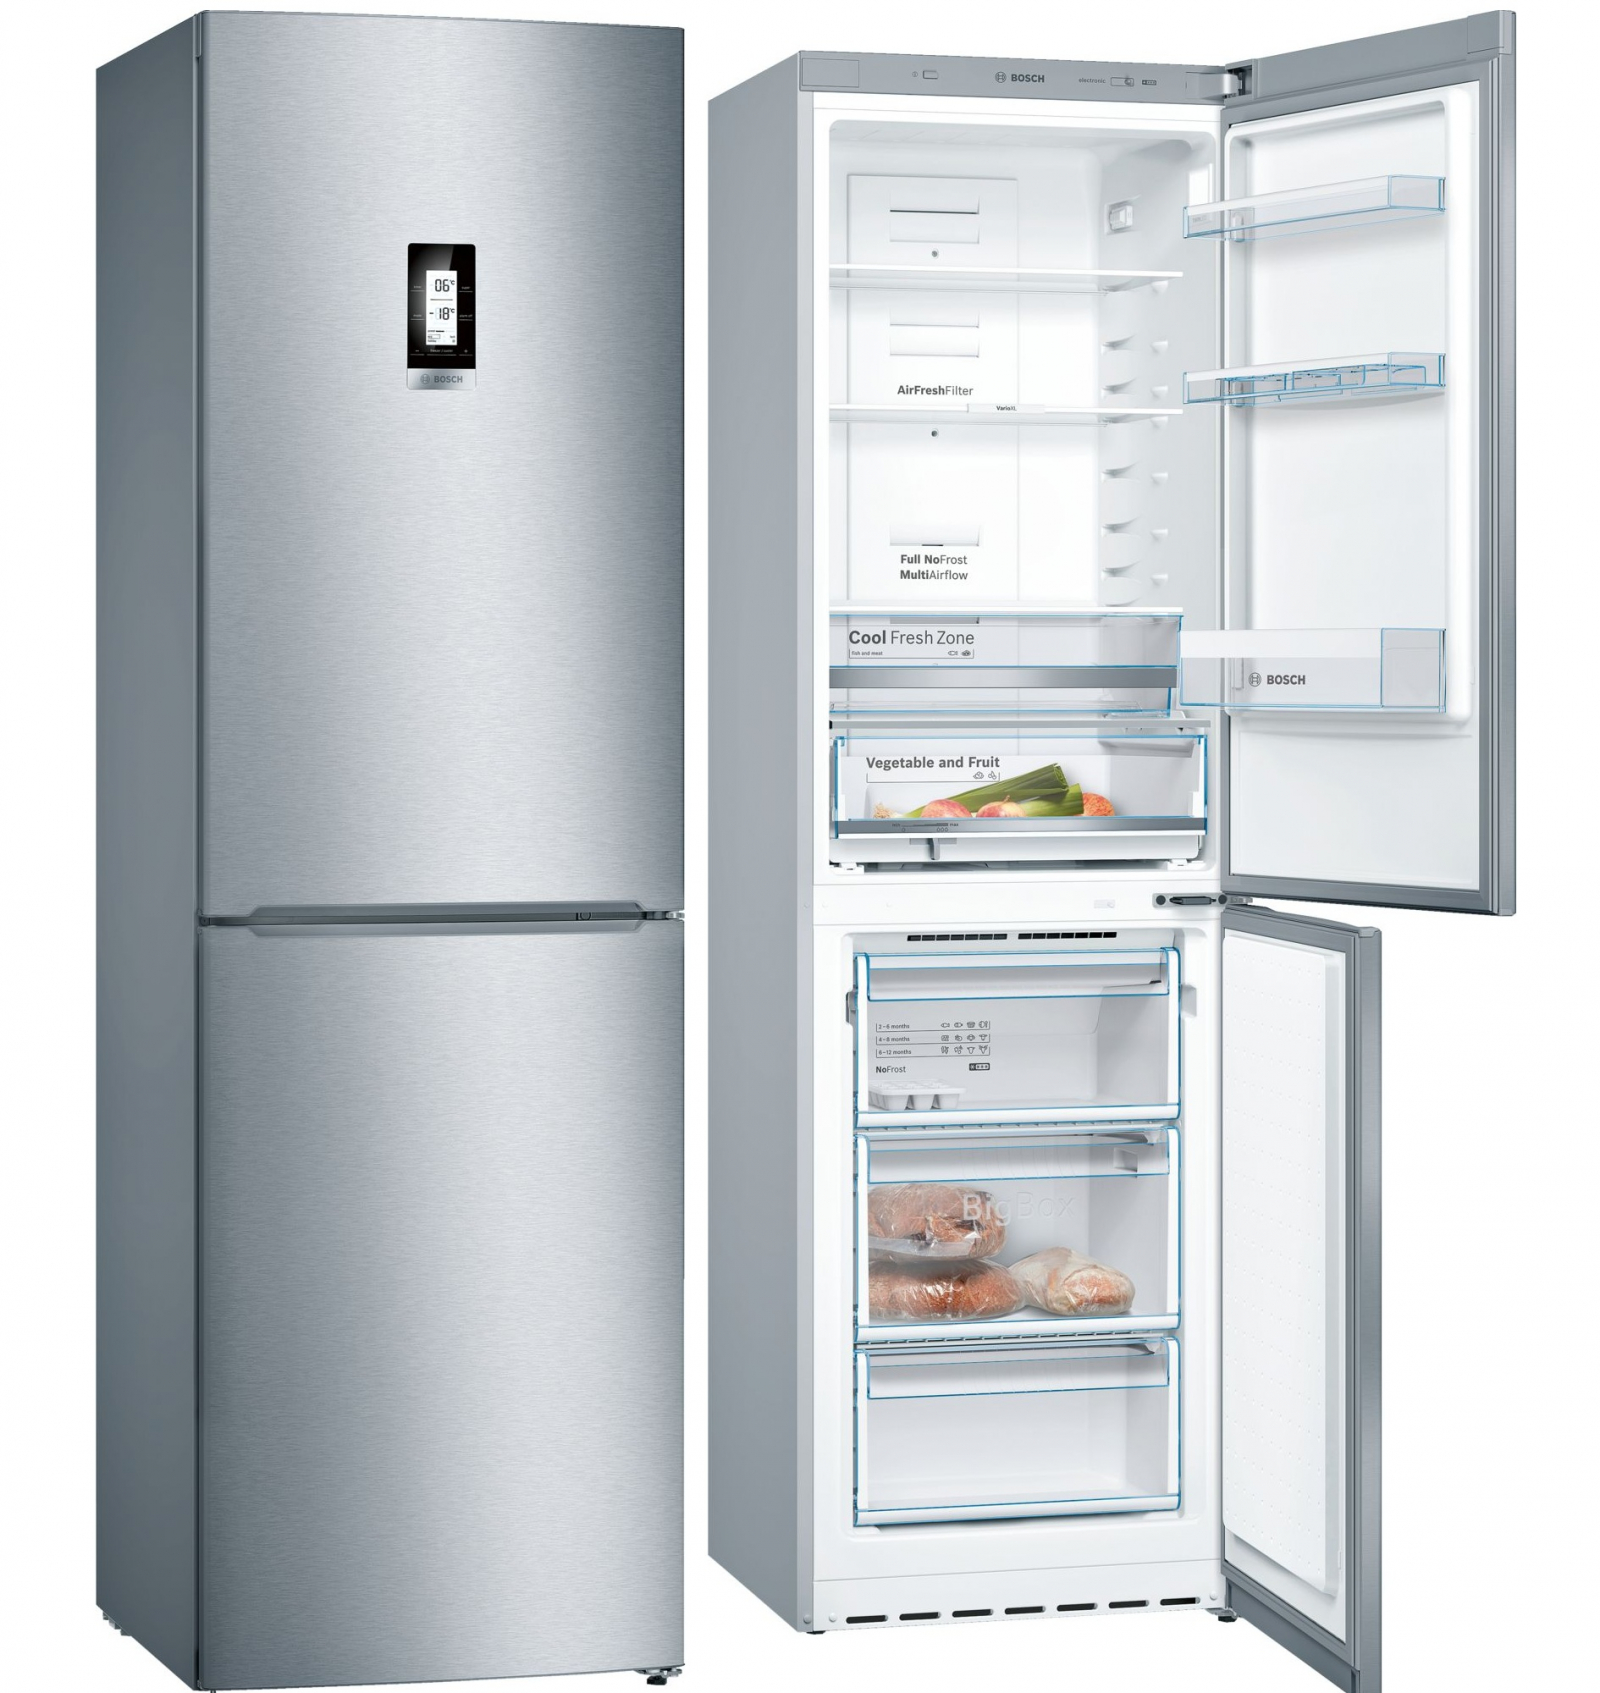 холодильник bosch kgn39vi1mr, купить в Красноярске холодильник bosch kgn39vi1mr,  купить в Красноярске дешево холодильник bosch kgn39vi1mr, купить в Красноярске минимальной цене холодильник bosch kgn39vi1mr